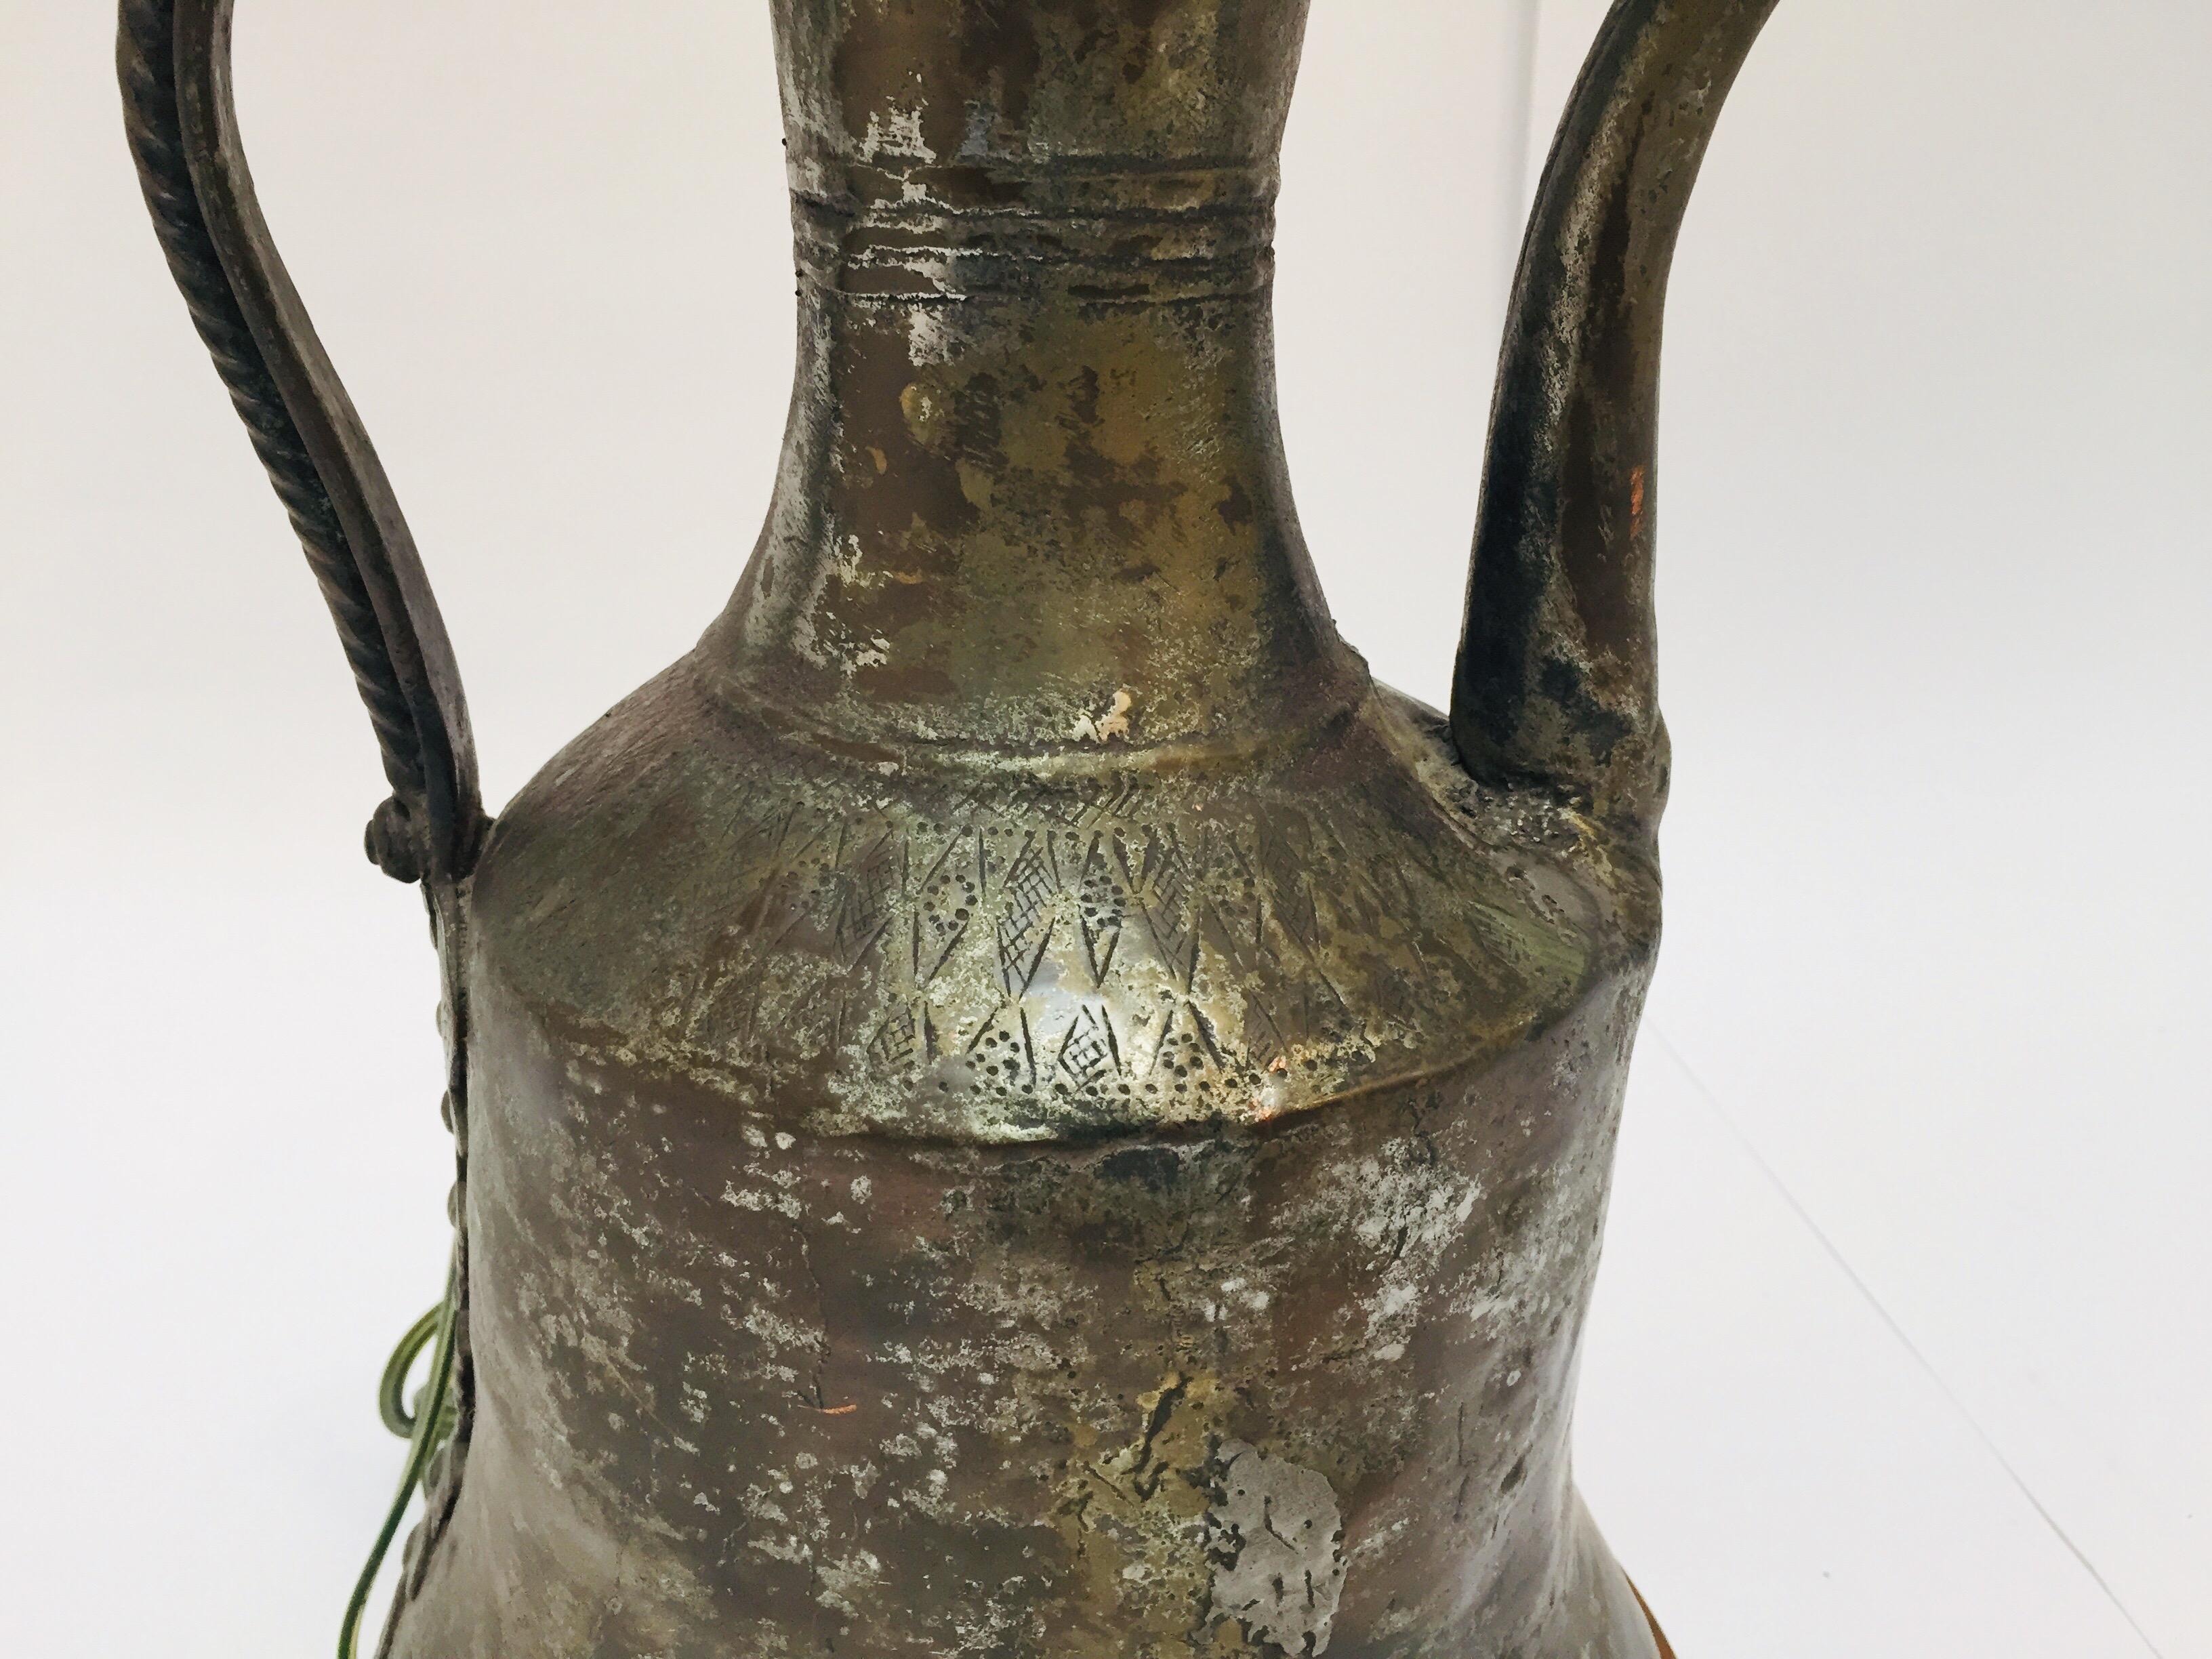 Pot à café Dallah en cuivre étamé du Moyen Orient traditionnel arabe du 19ème siècle transformé en lampe de table.
Cafetière en cuivre étamé martelé à la main avec finition en laiton riveté.
Hauteur totale : 20